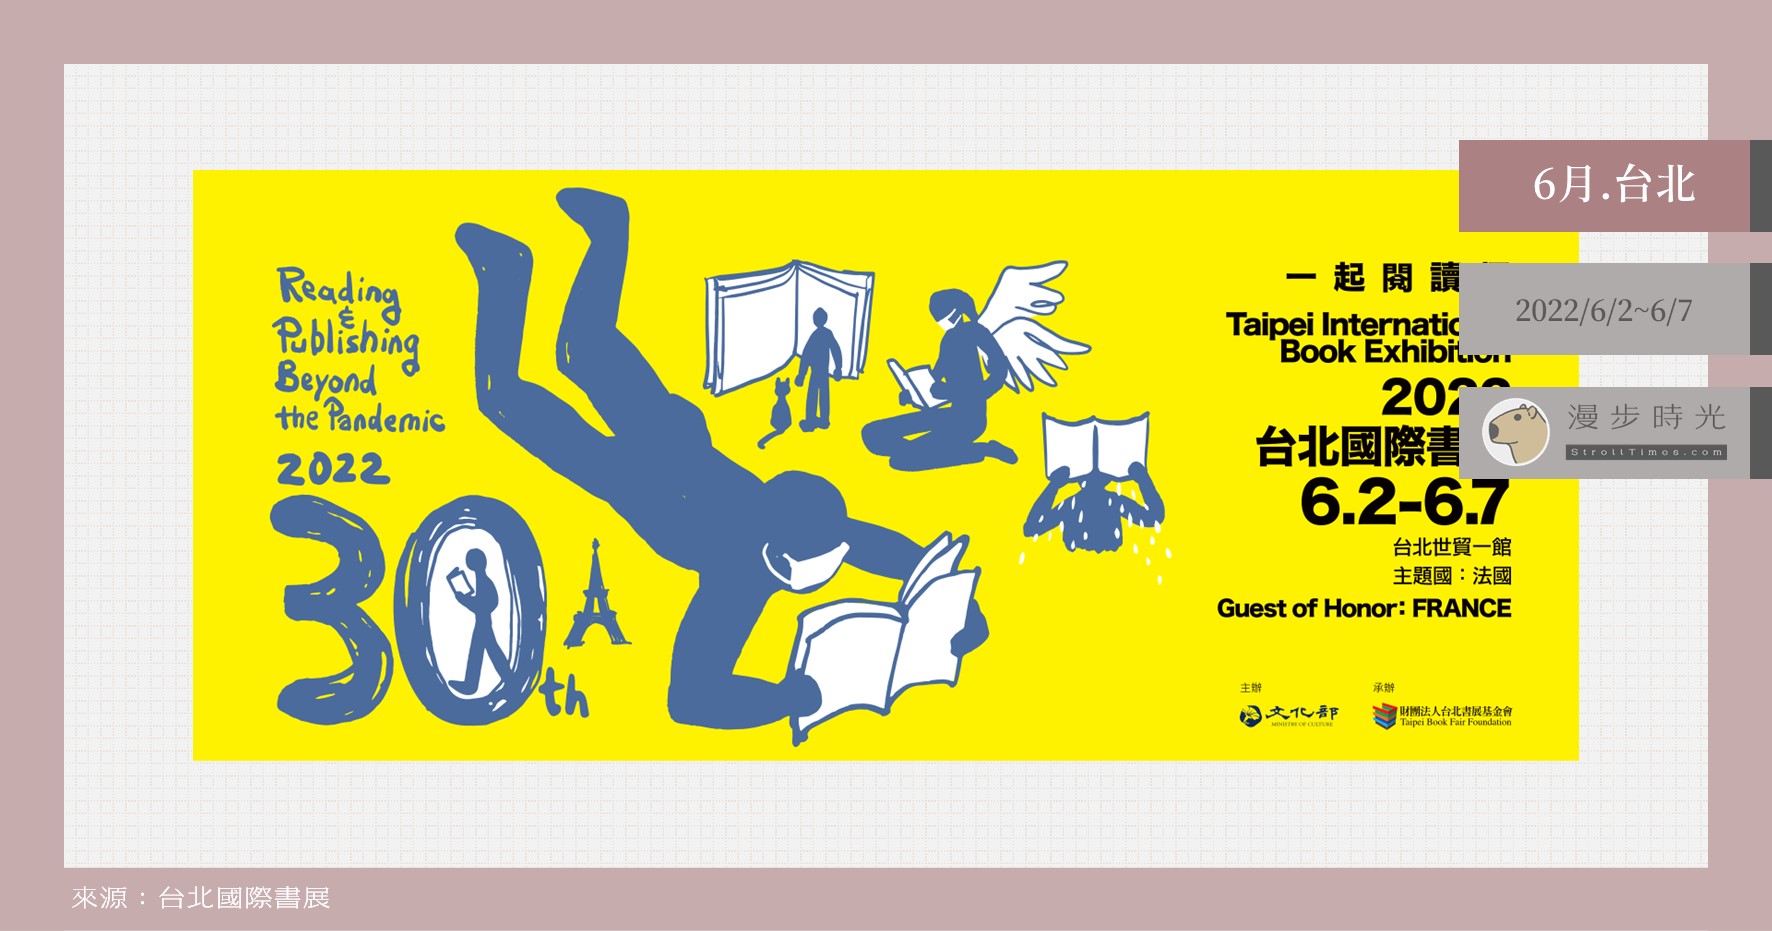 【台北活動】2022台北國際書展，一系列特色書展、市集、手做與講座衝擊閱讀魂！也有線上講座可參與喔！